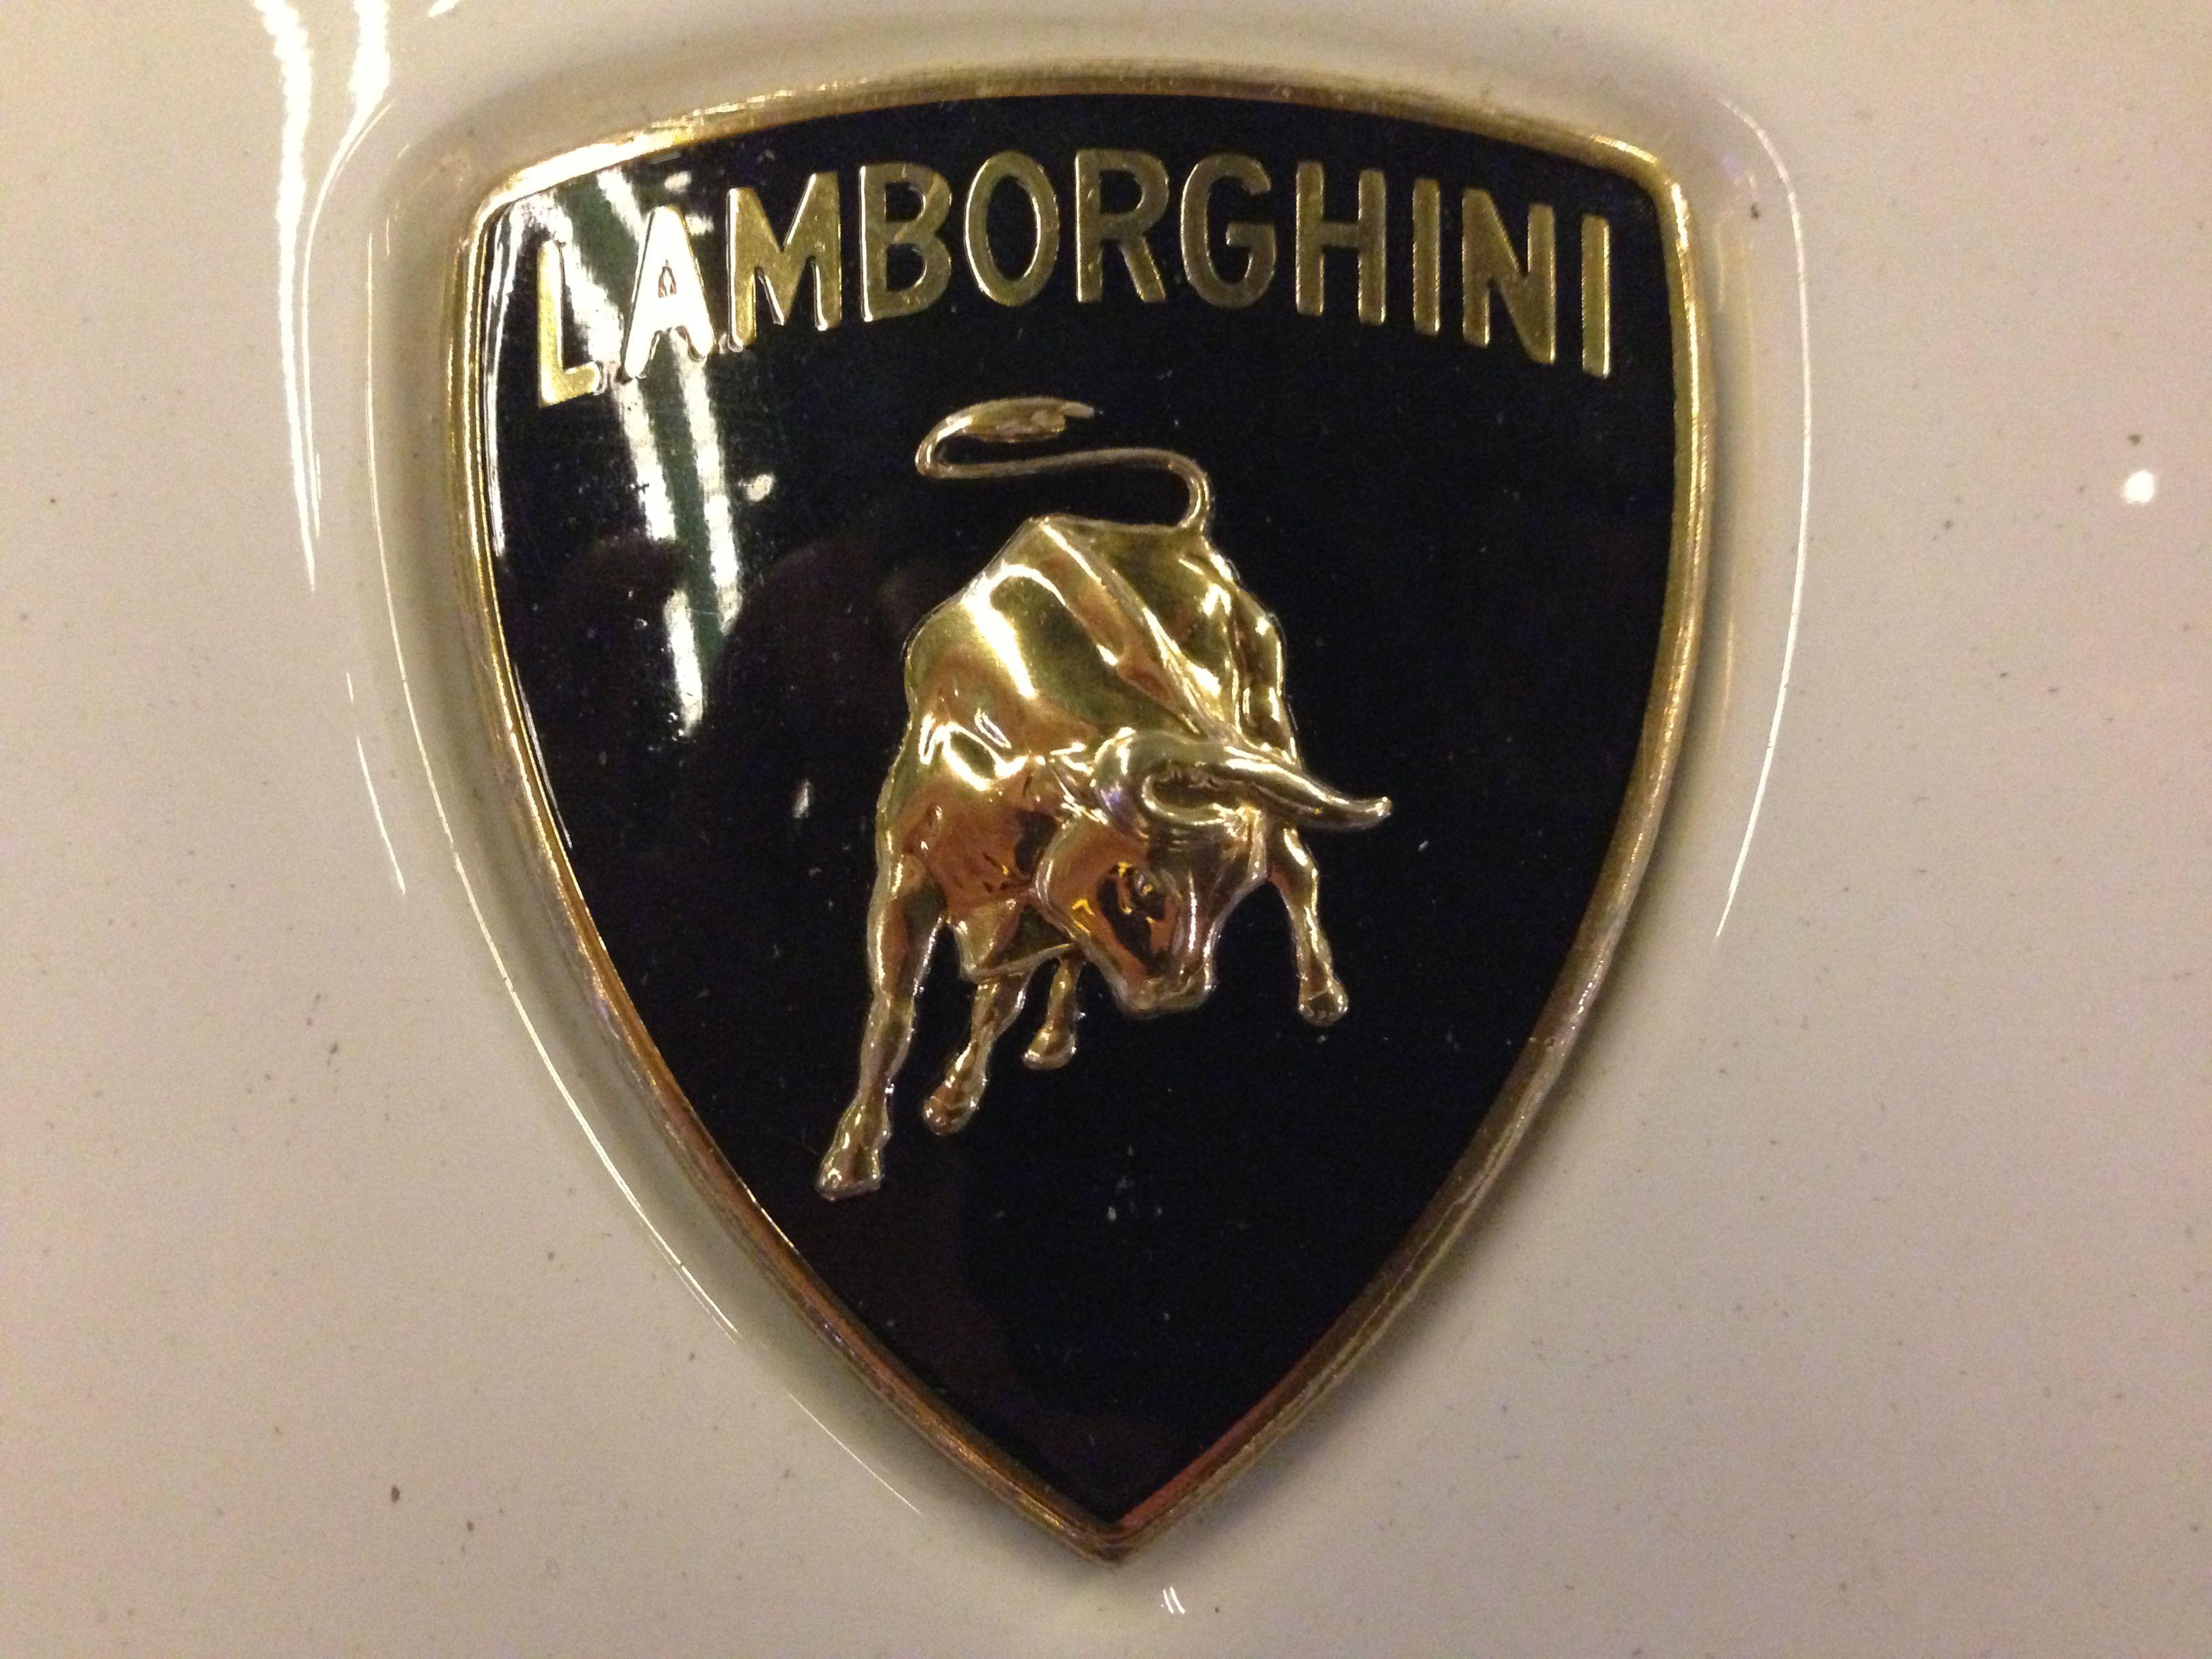 Lanmborghini Logo - File:Lamborghini Logo.jpg - Wikimedia Commons